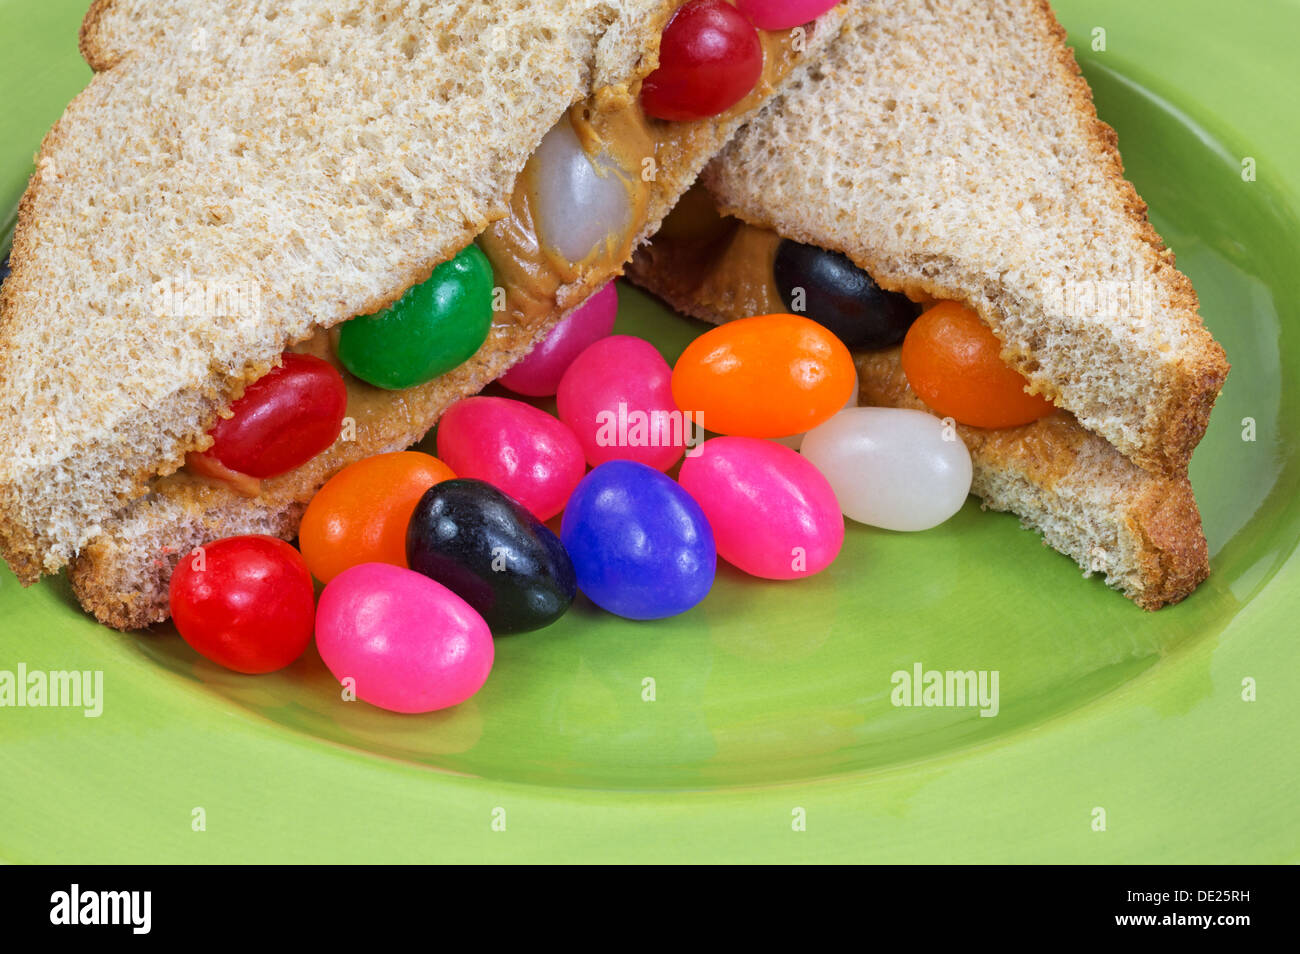 Una vista ravvicinata di un burro di arachidi e jelly bean panino su una piastra verde con extra jelly beans. Foto Stock